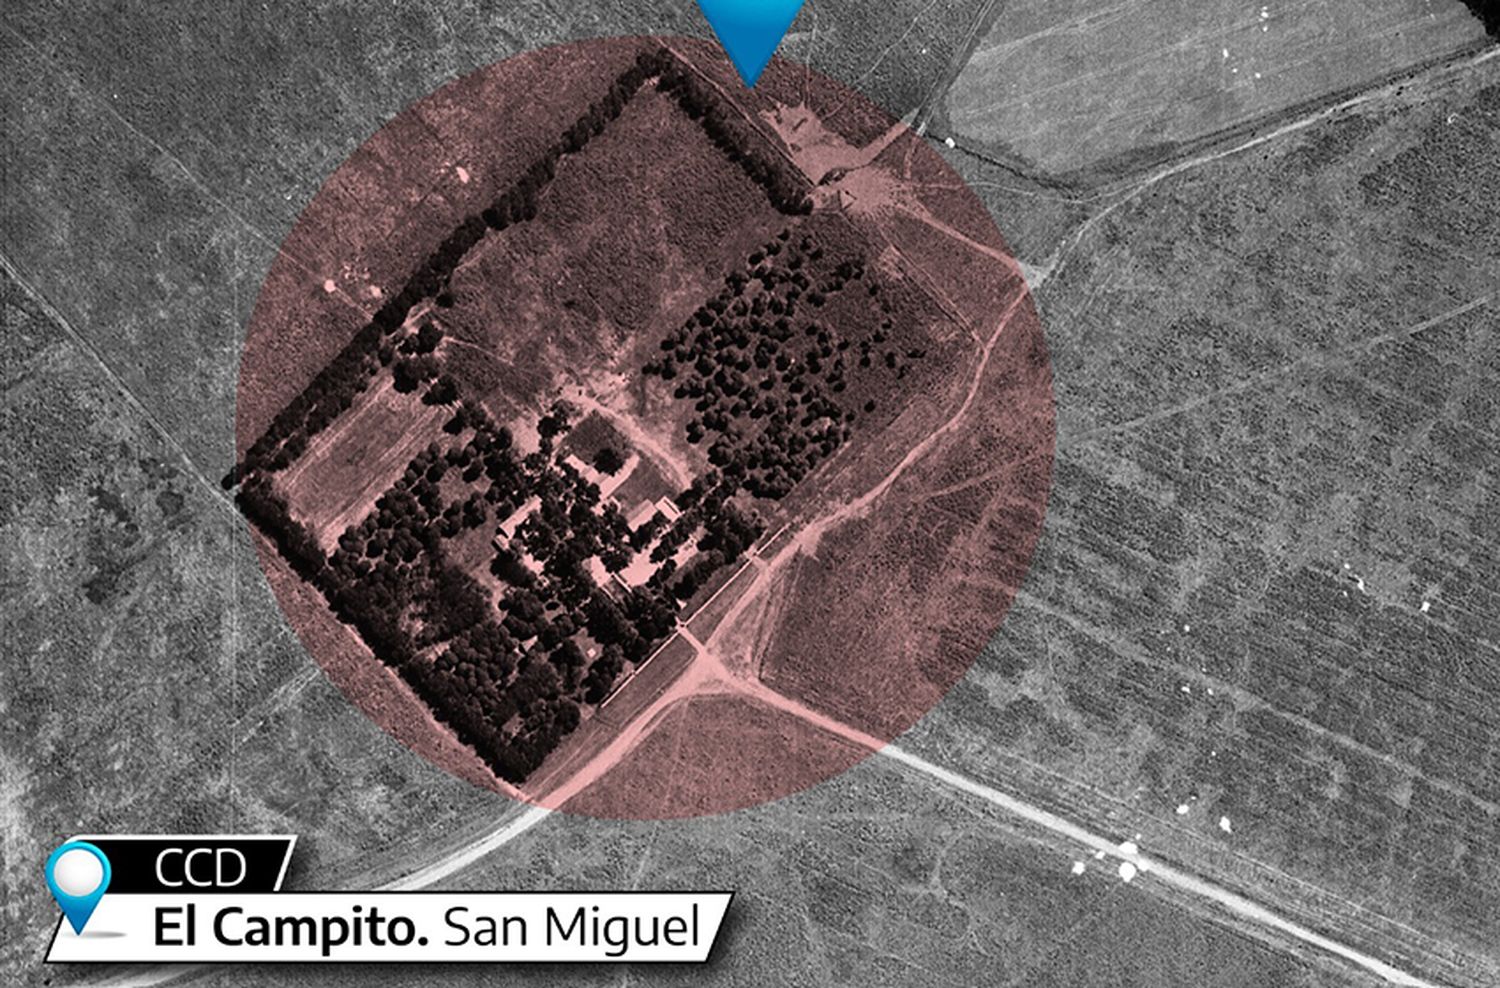 ARBA digitaliza imágenes aéreas de los años ‘70 para facilitar la identificación de centros clandestinos de detención